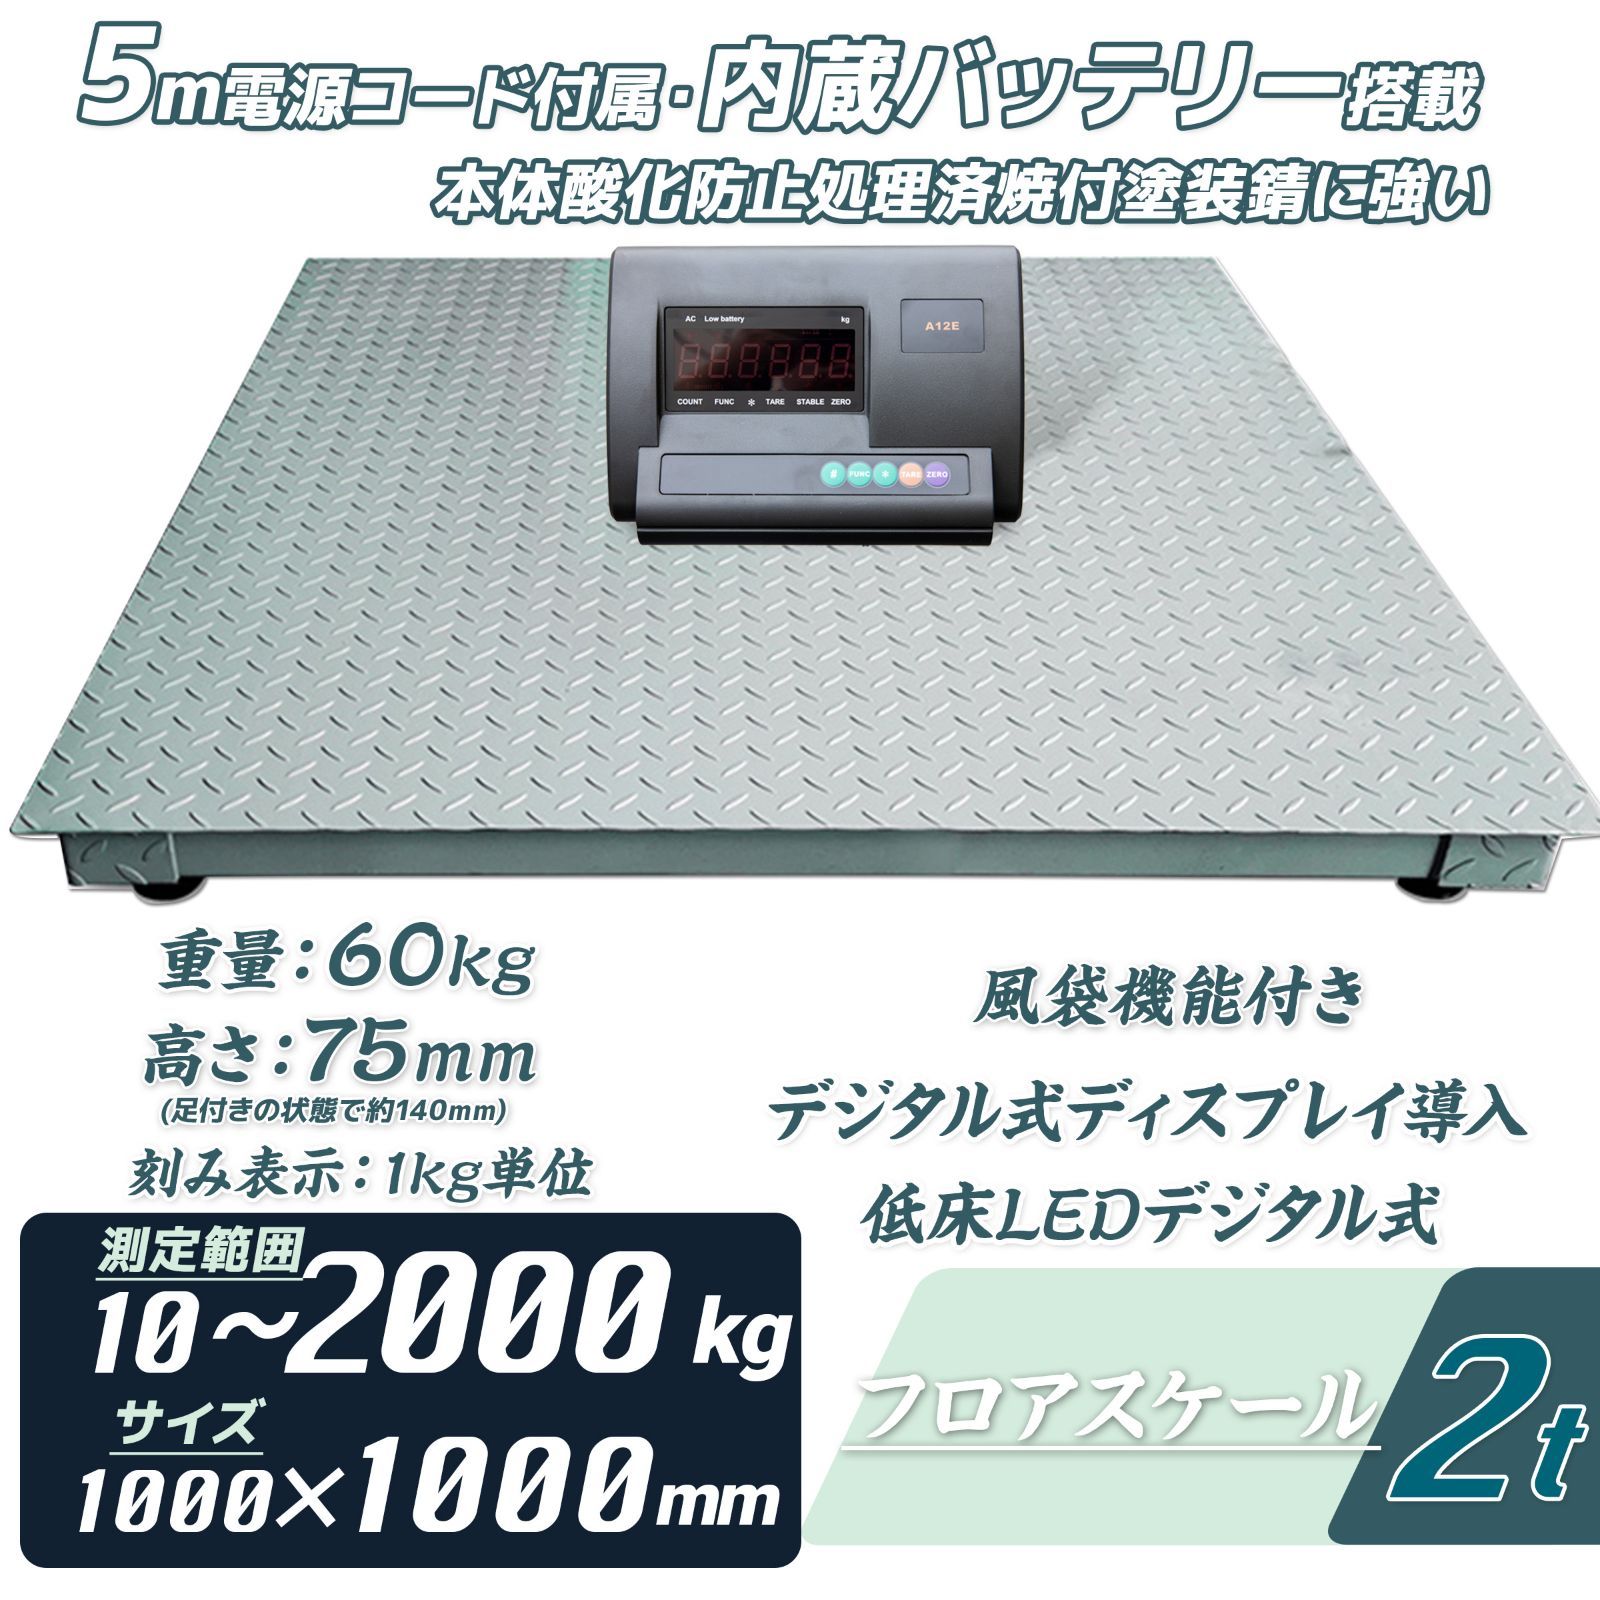 フロアスケール デジタル式 2t サイズ1000mm 計量器 台秤 低床タイプ メルカリShops